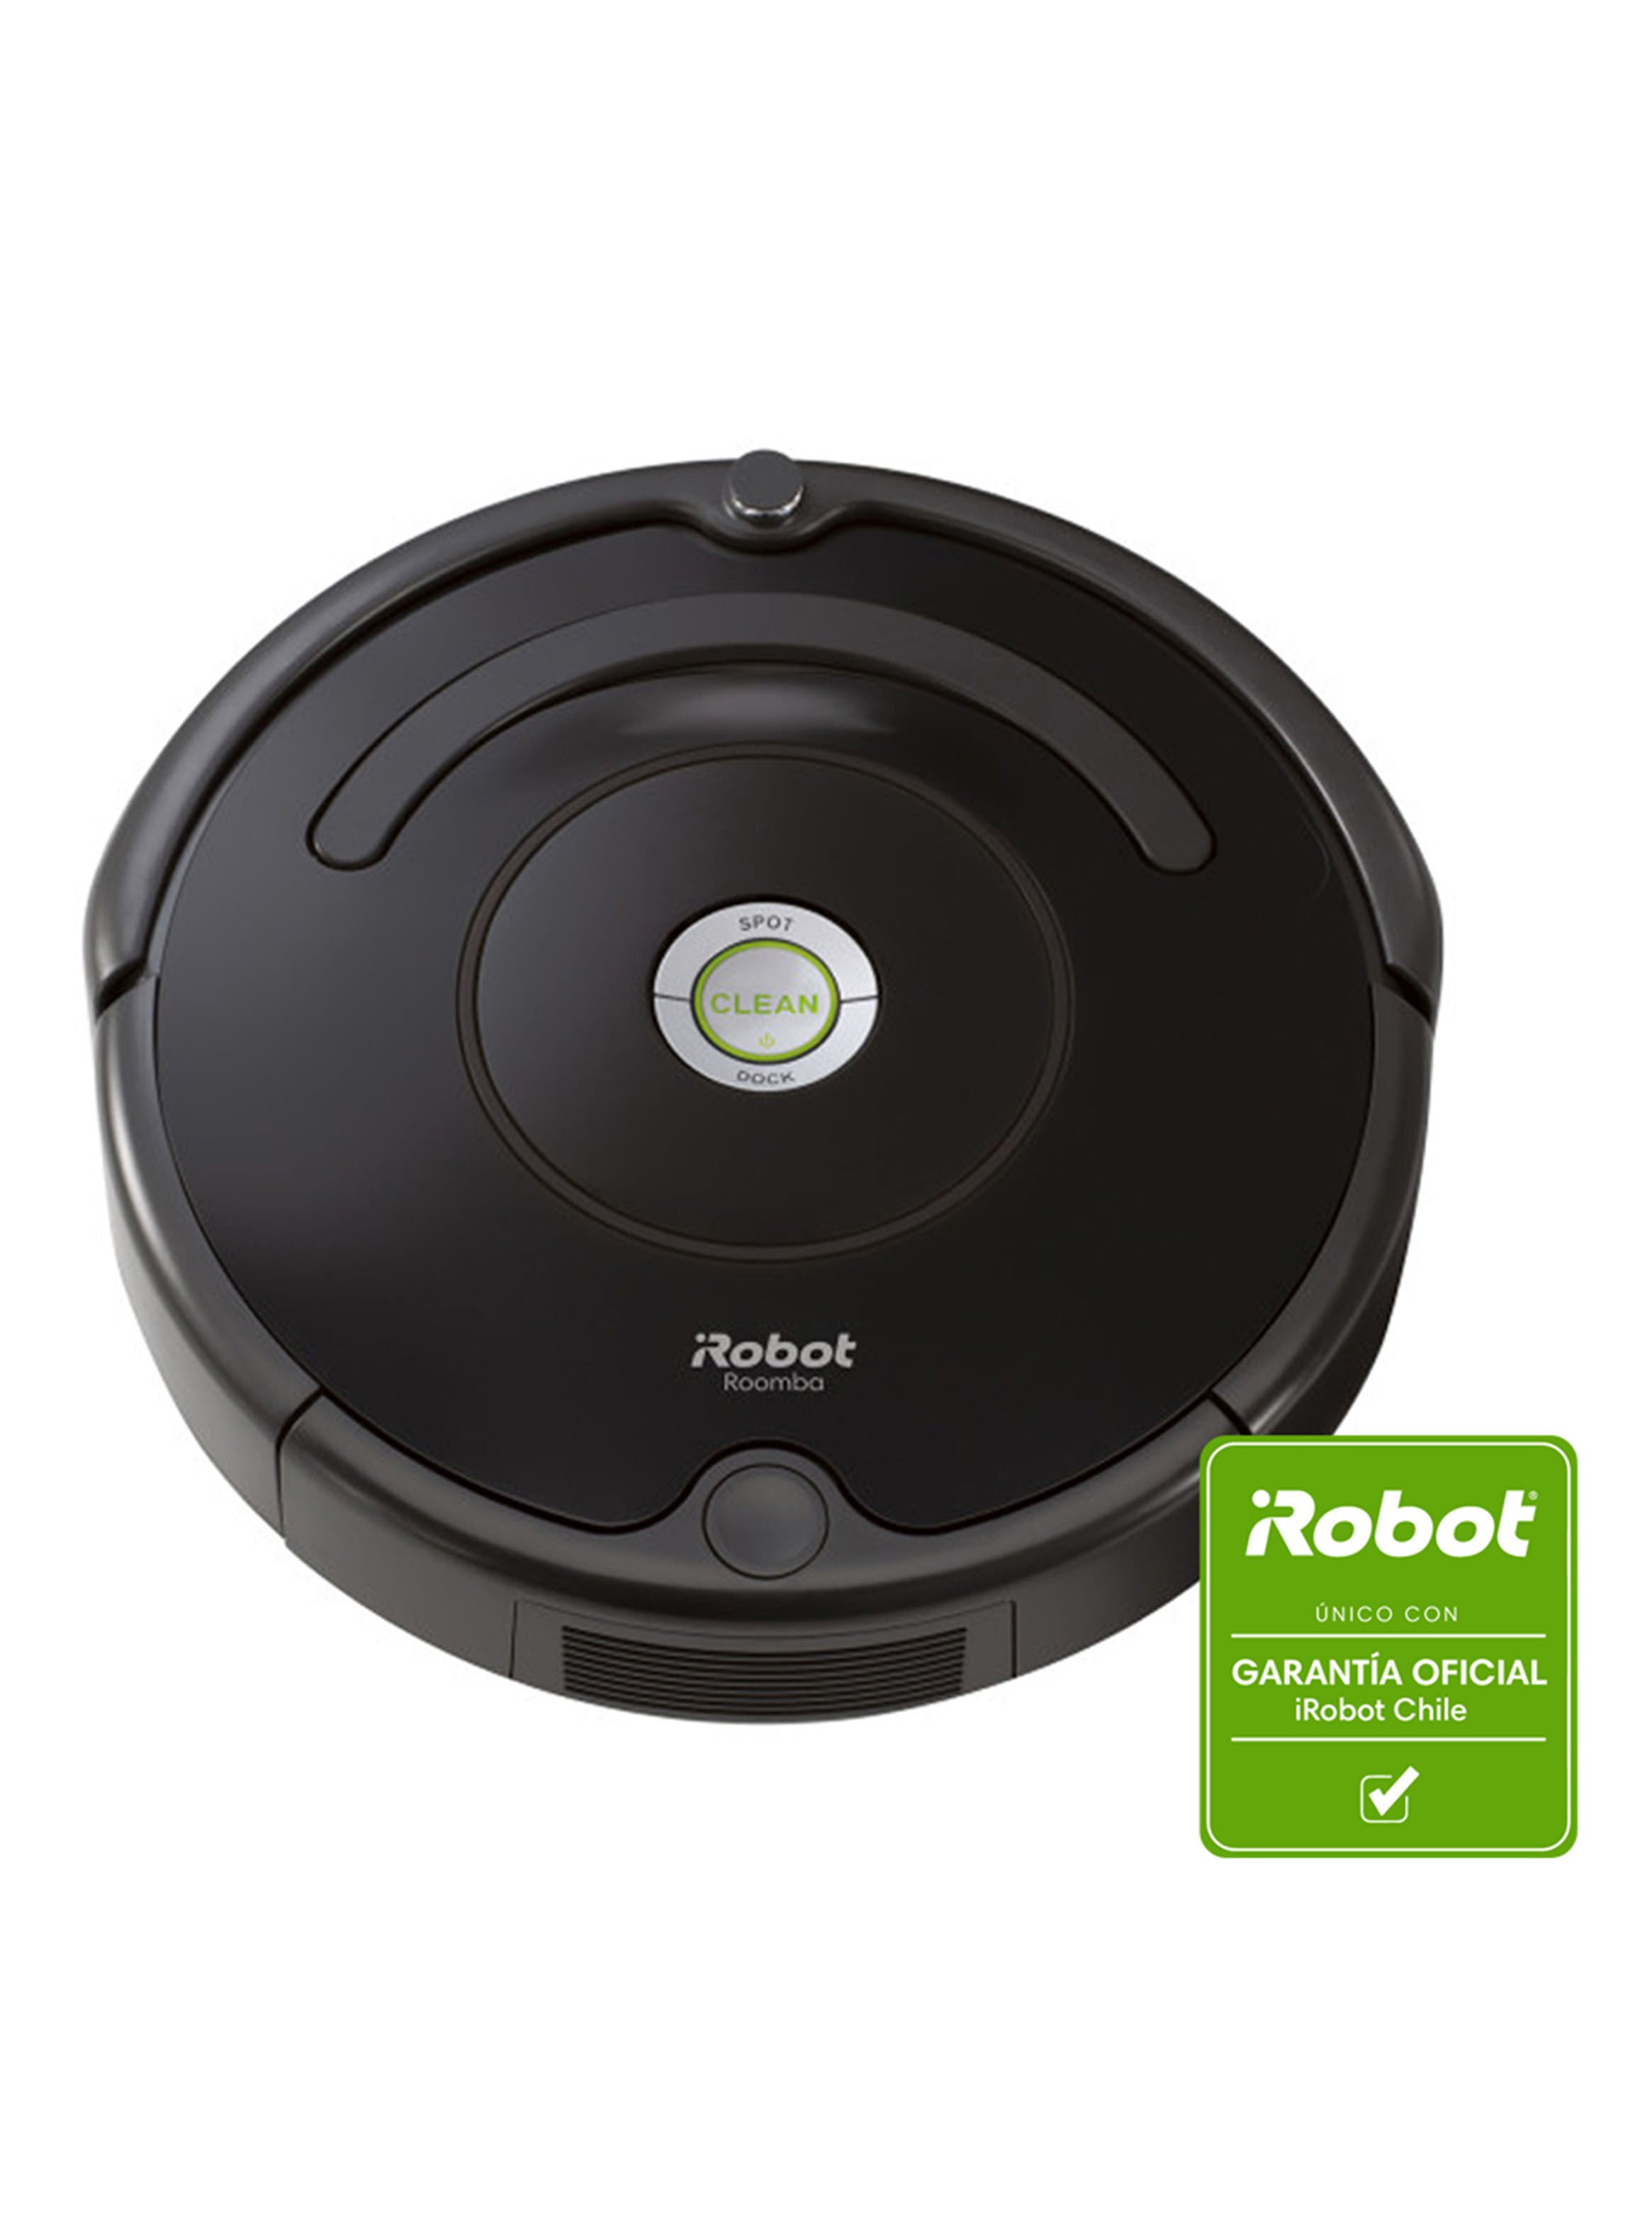 Ya es oficial:  abandona la compra de iRobot, la empresa